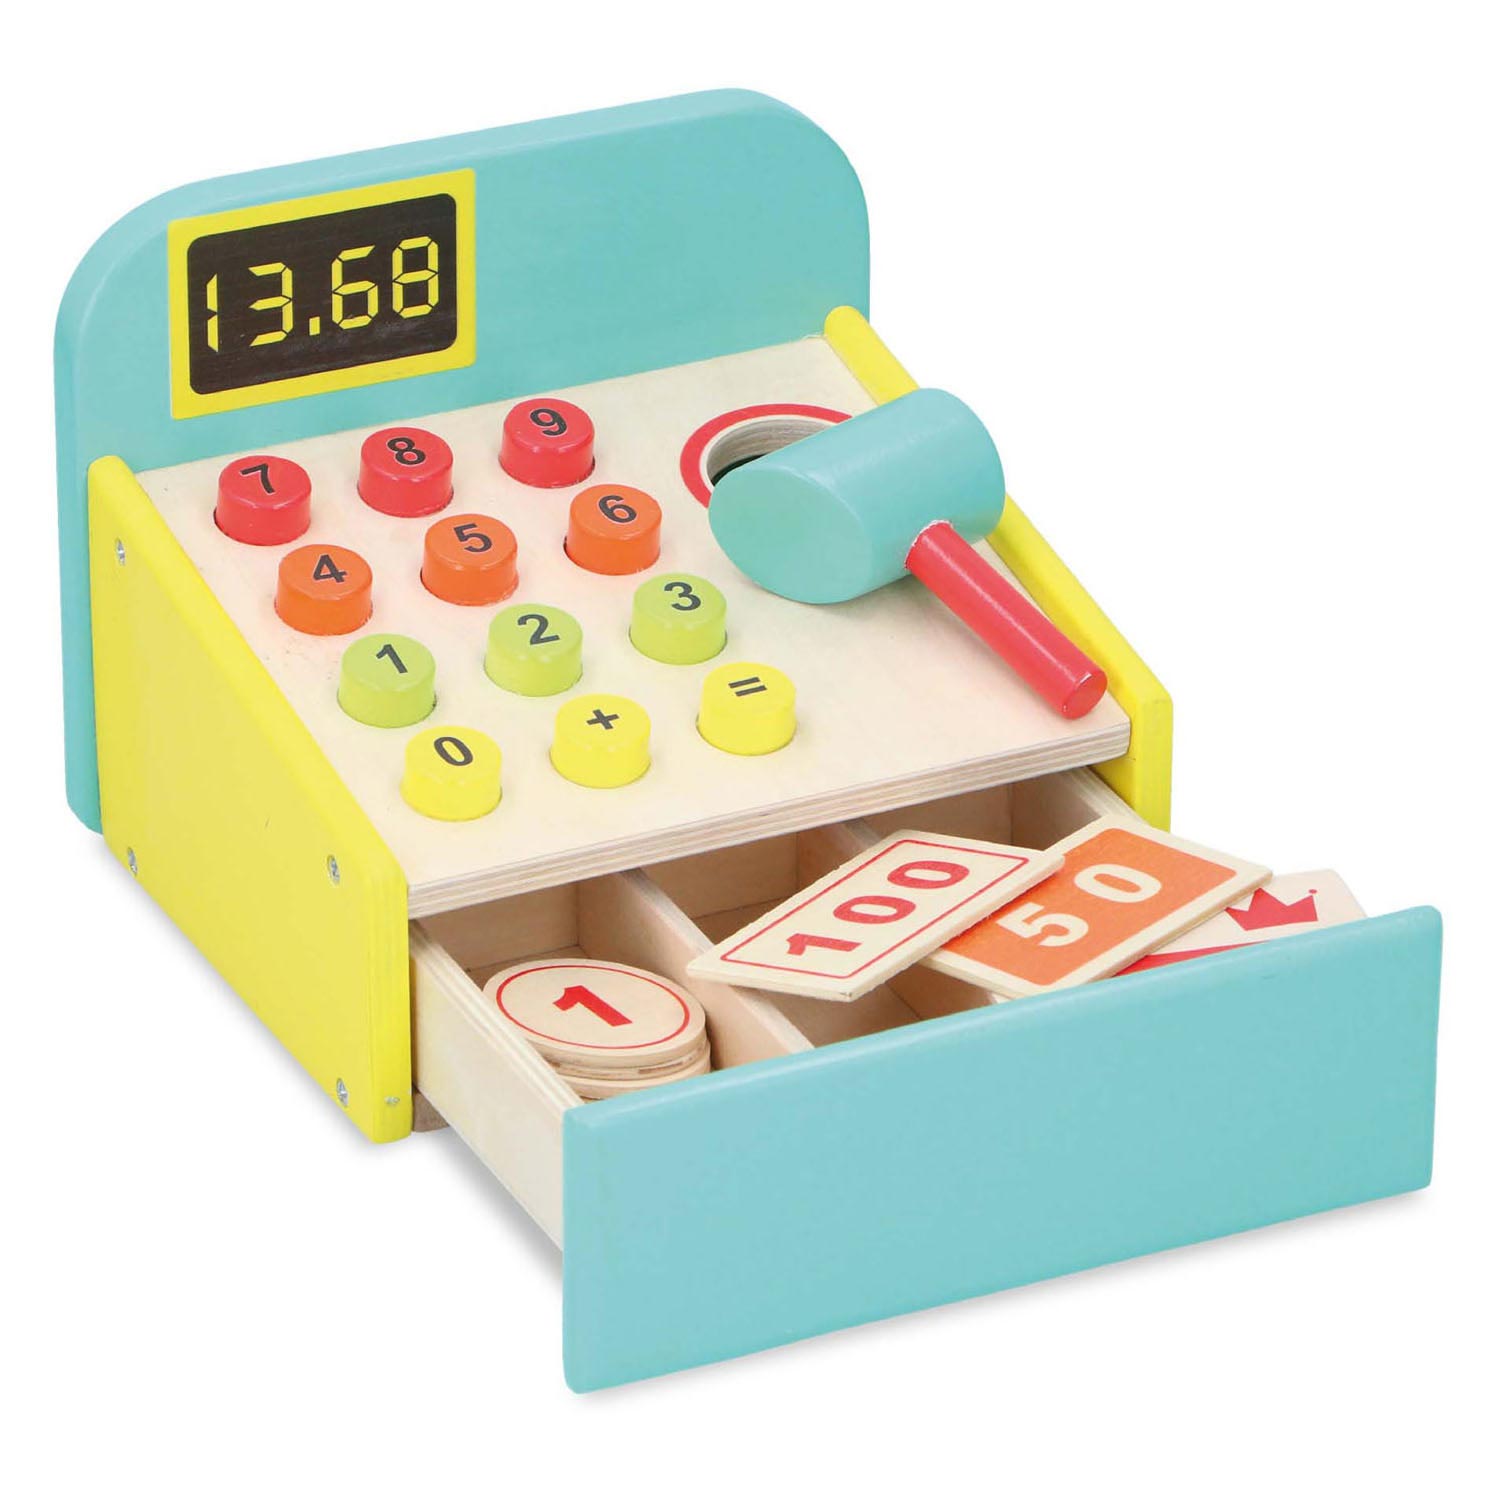 Caisse enregistreuse jouet en bois avec accessoires, 12 pcs.